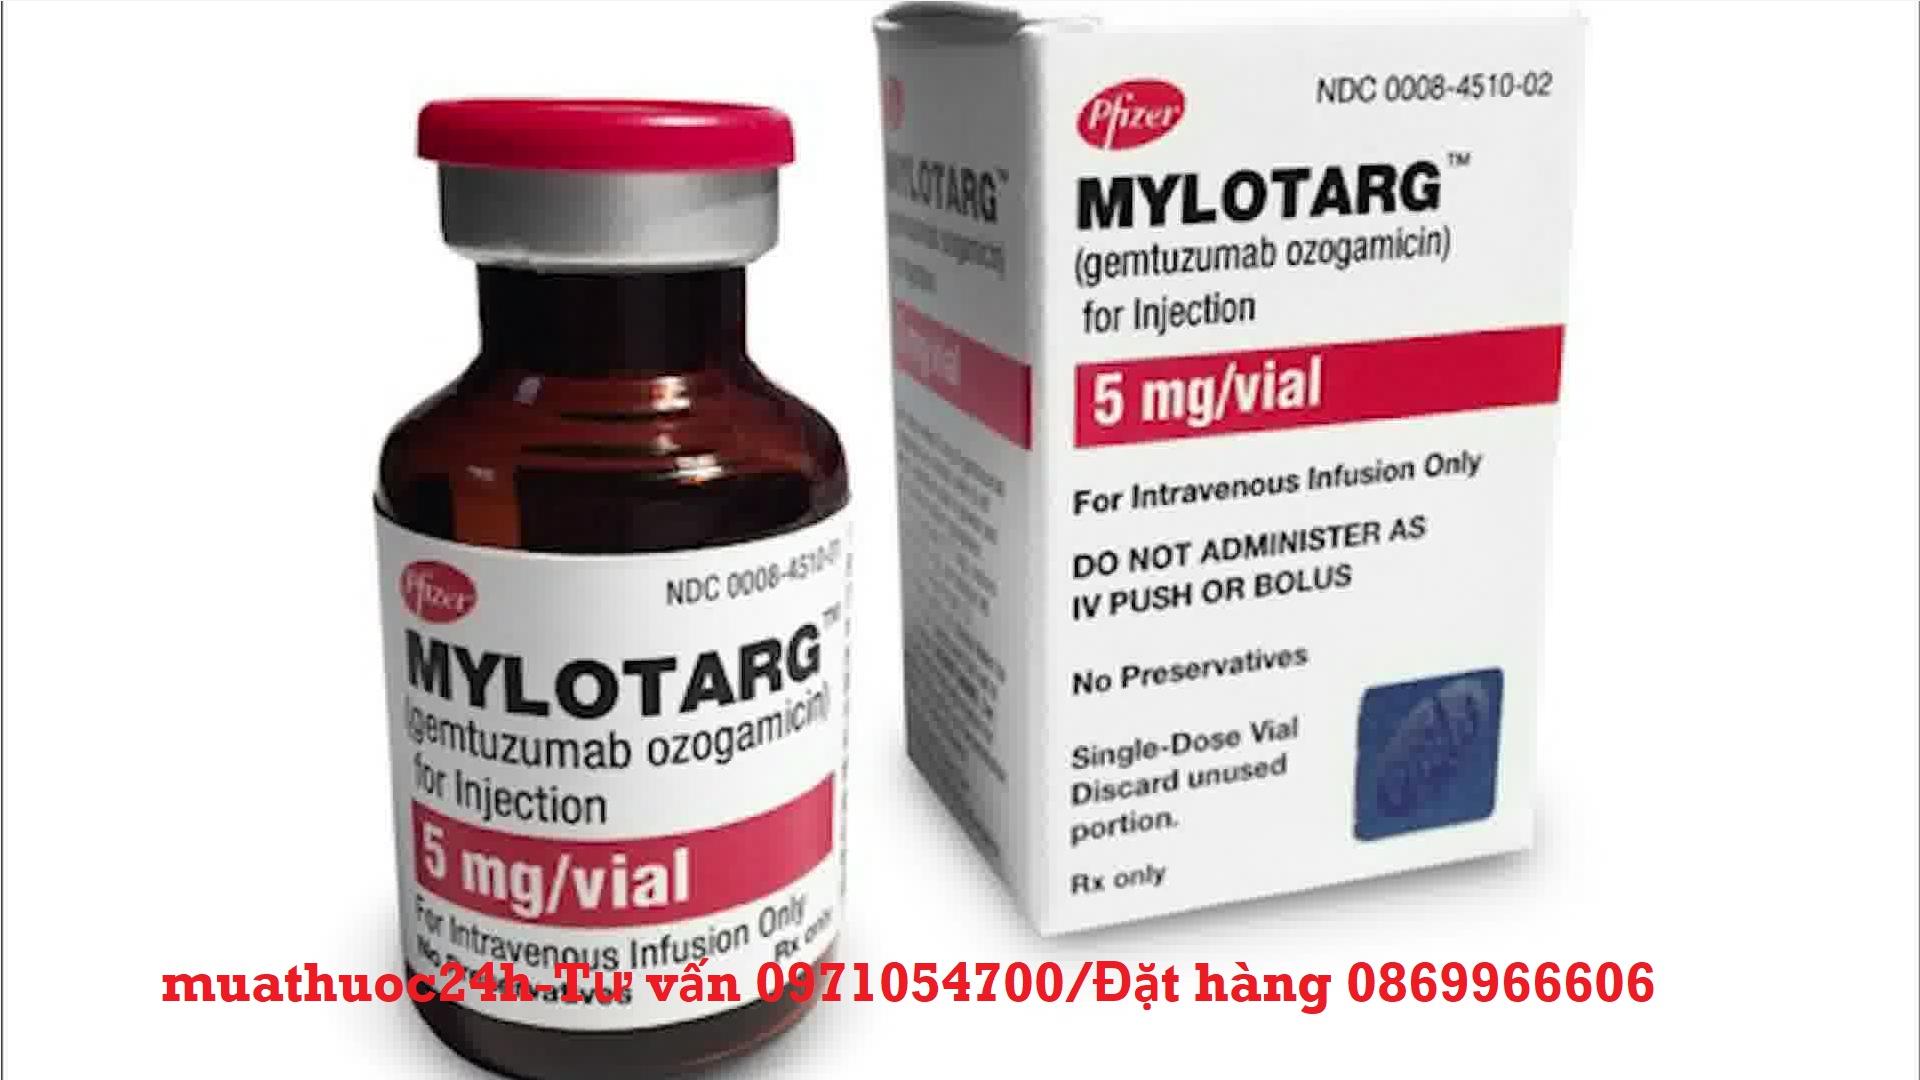 Thuốc Mylotarg Gemtuzumab ozogamicin giá bao nhiêu mua ở đâu?